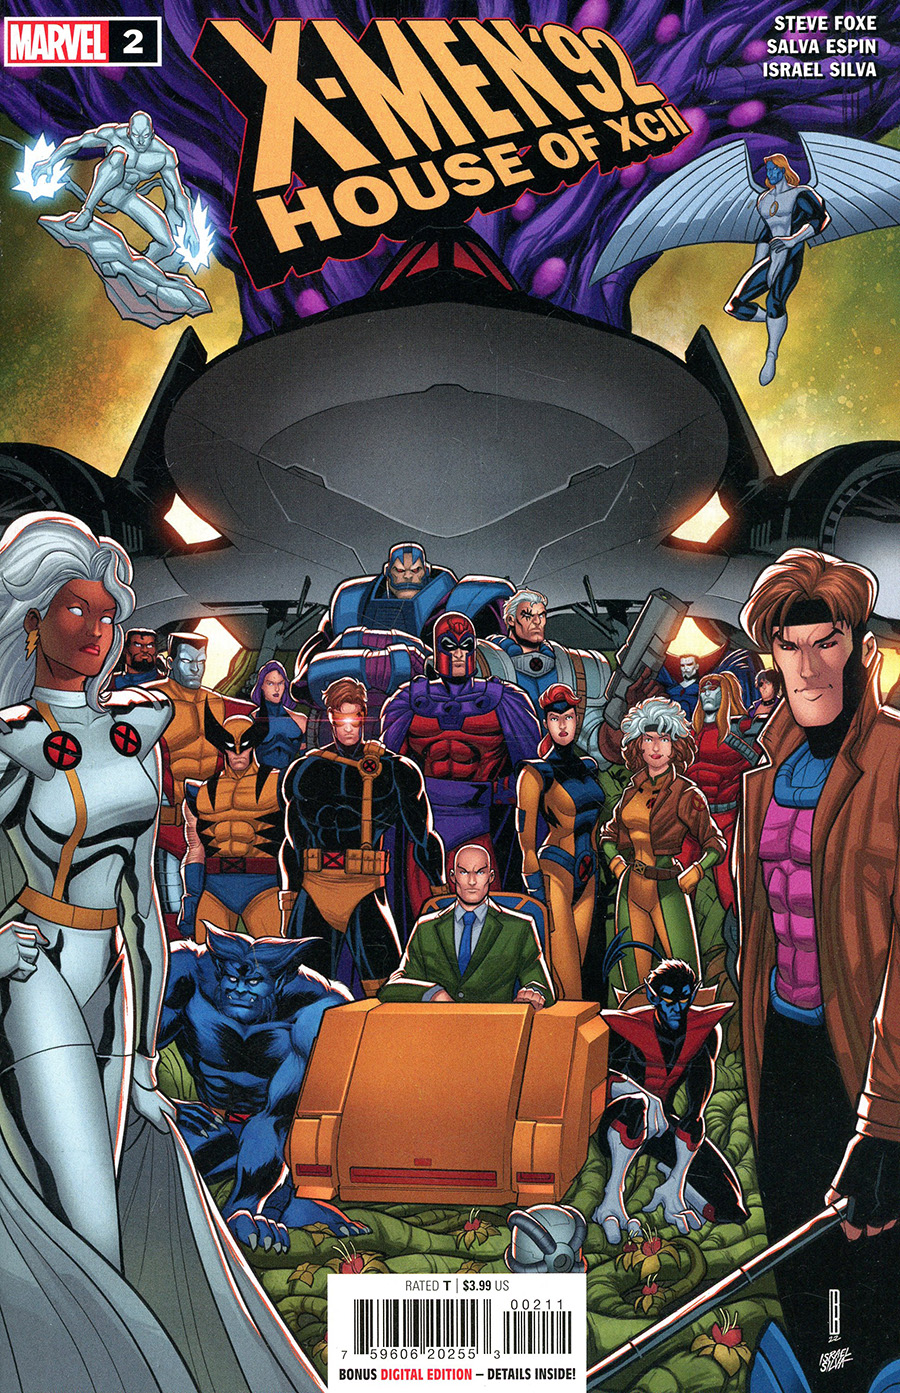 X-Men 92 House Of XCII #2 Cover A Regular David Baldeon Cover